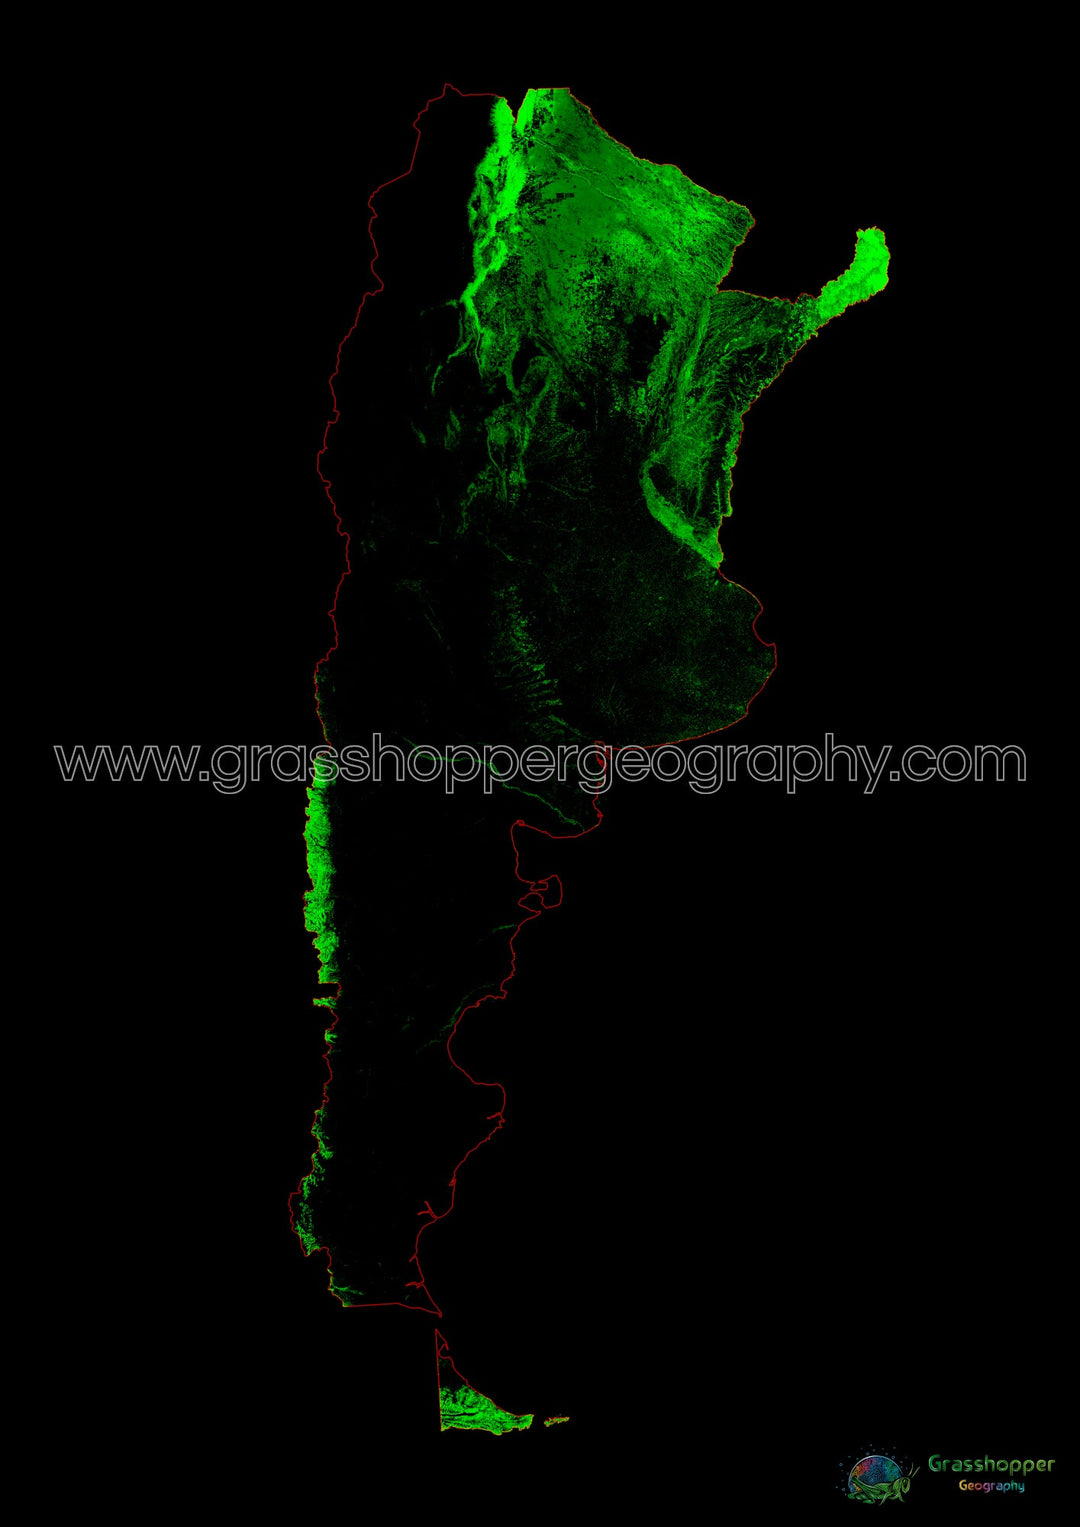 Argentine - Carte du couvert forestier - Tirage d'art